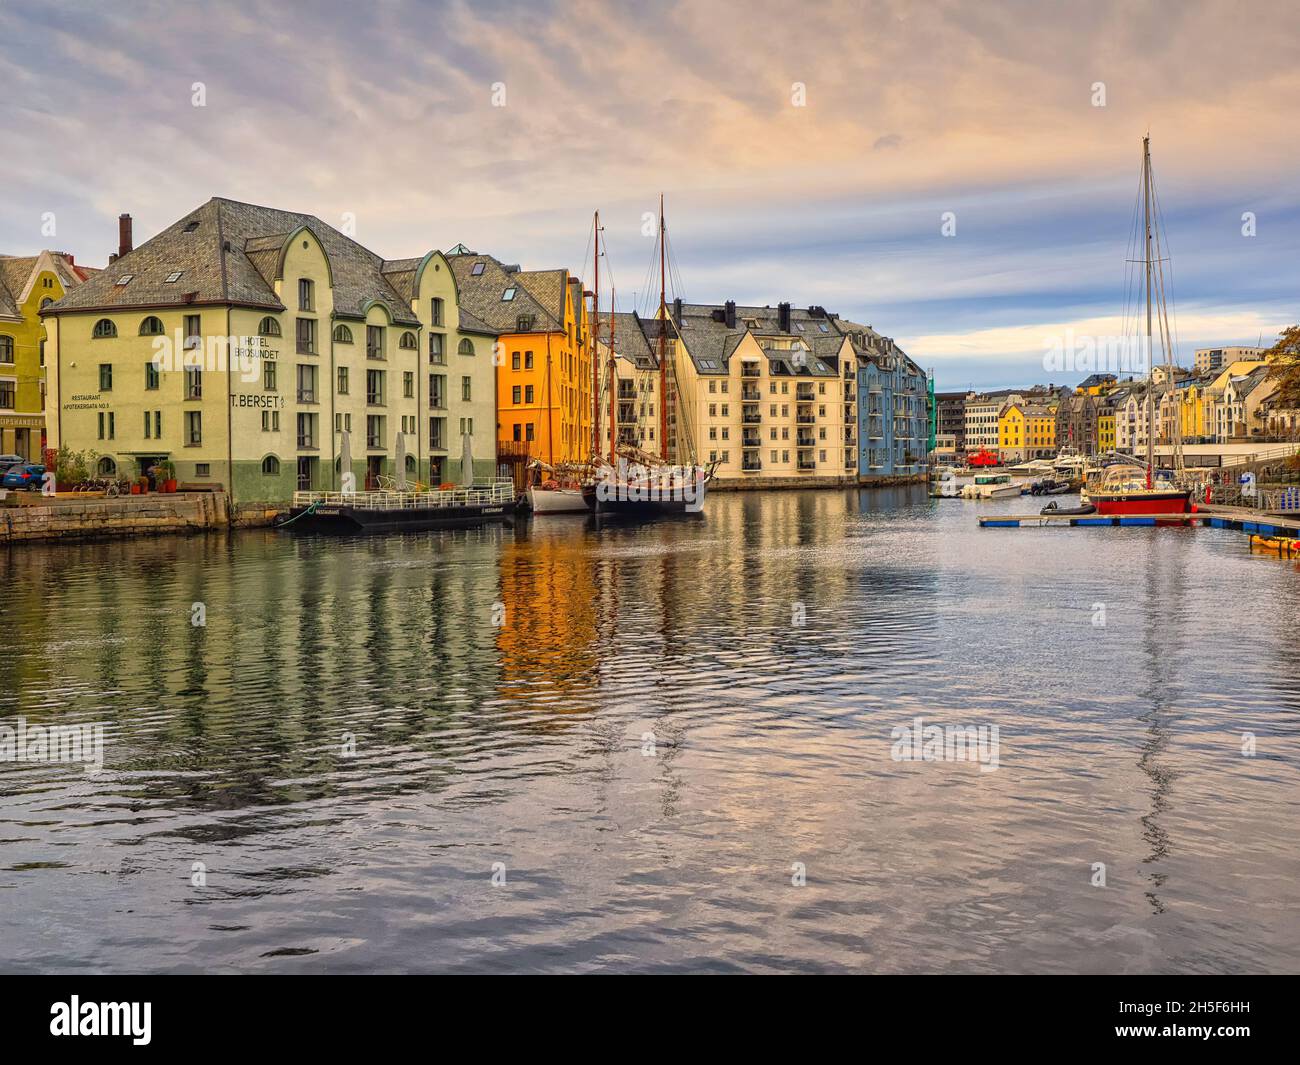 Die schönen farbigen Gebäude entlang des Brosundet-Kanals. Der Kanal verbindet die südliche Hafenfront mit dem inneren Teil der Ålesund-Straße. Stockfoto